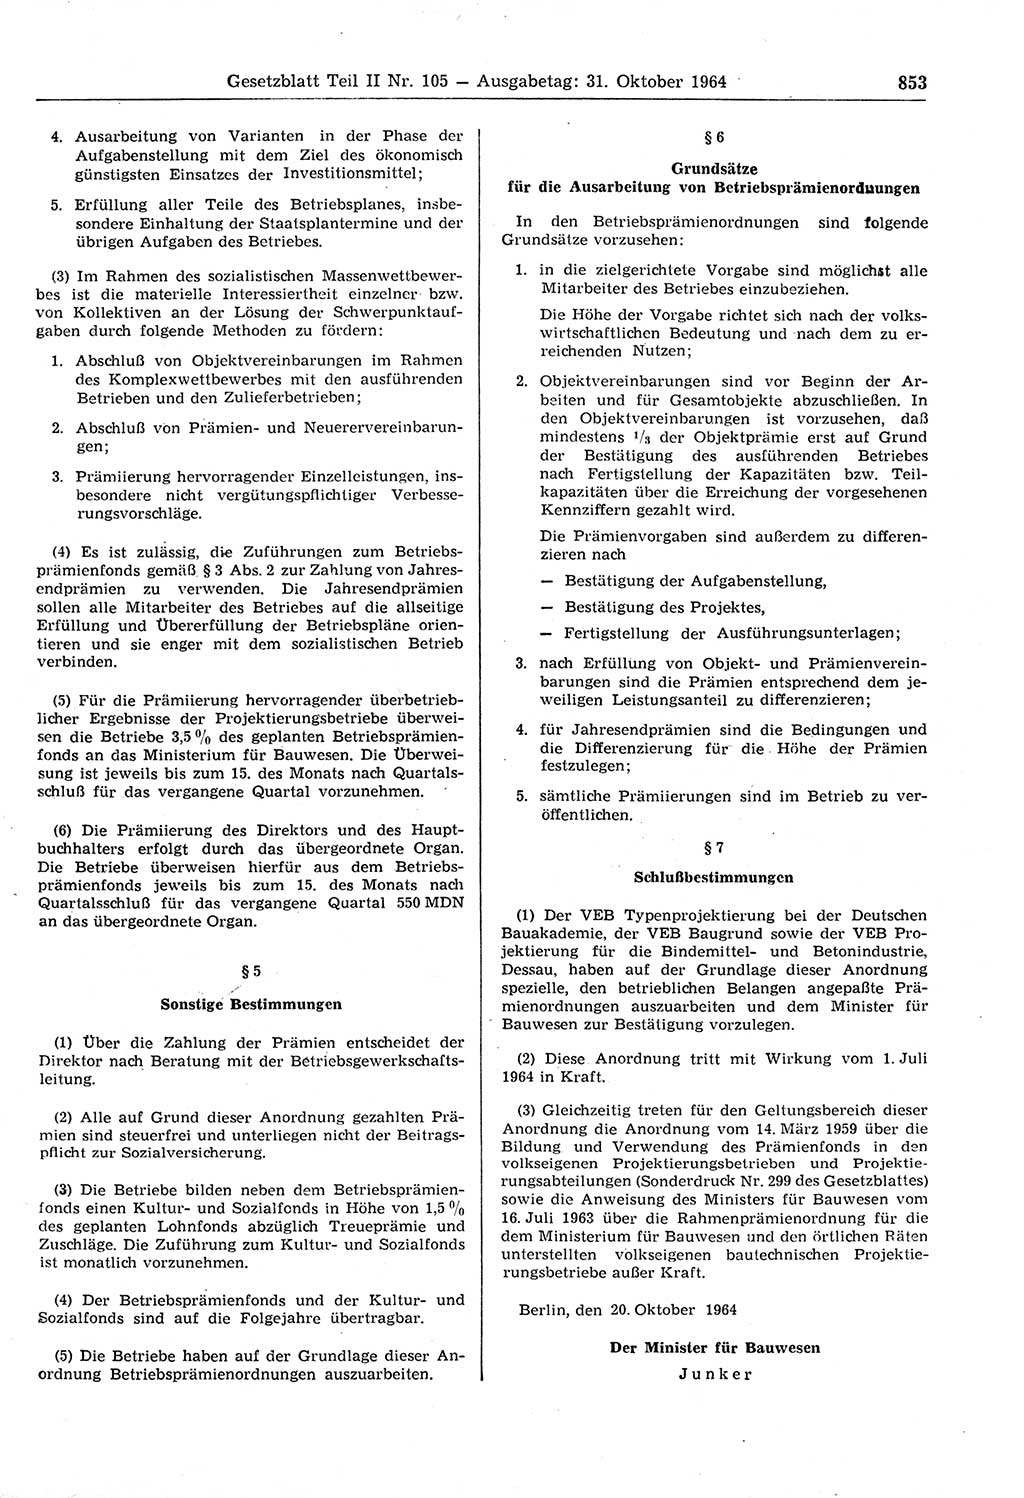 Gesetzblatt (GBl.) der Deutschen Demokratischen Republik (DDR) Teil ⅠⅠ 1964, Seite 853 (GBl. DDR ⅠⅠ 1964, S. 853)